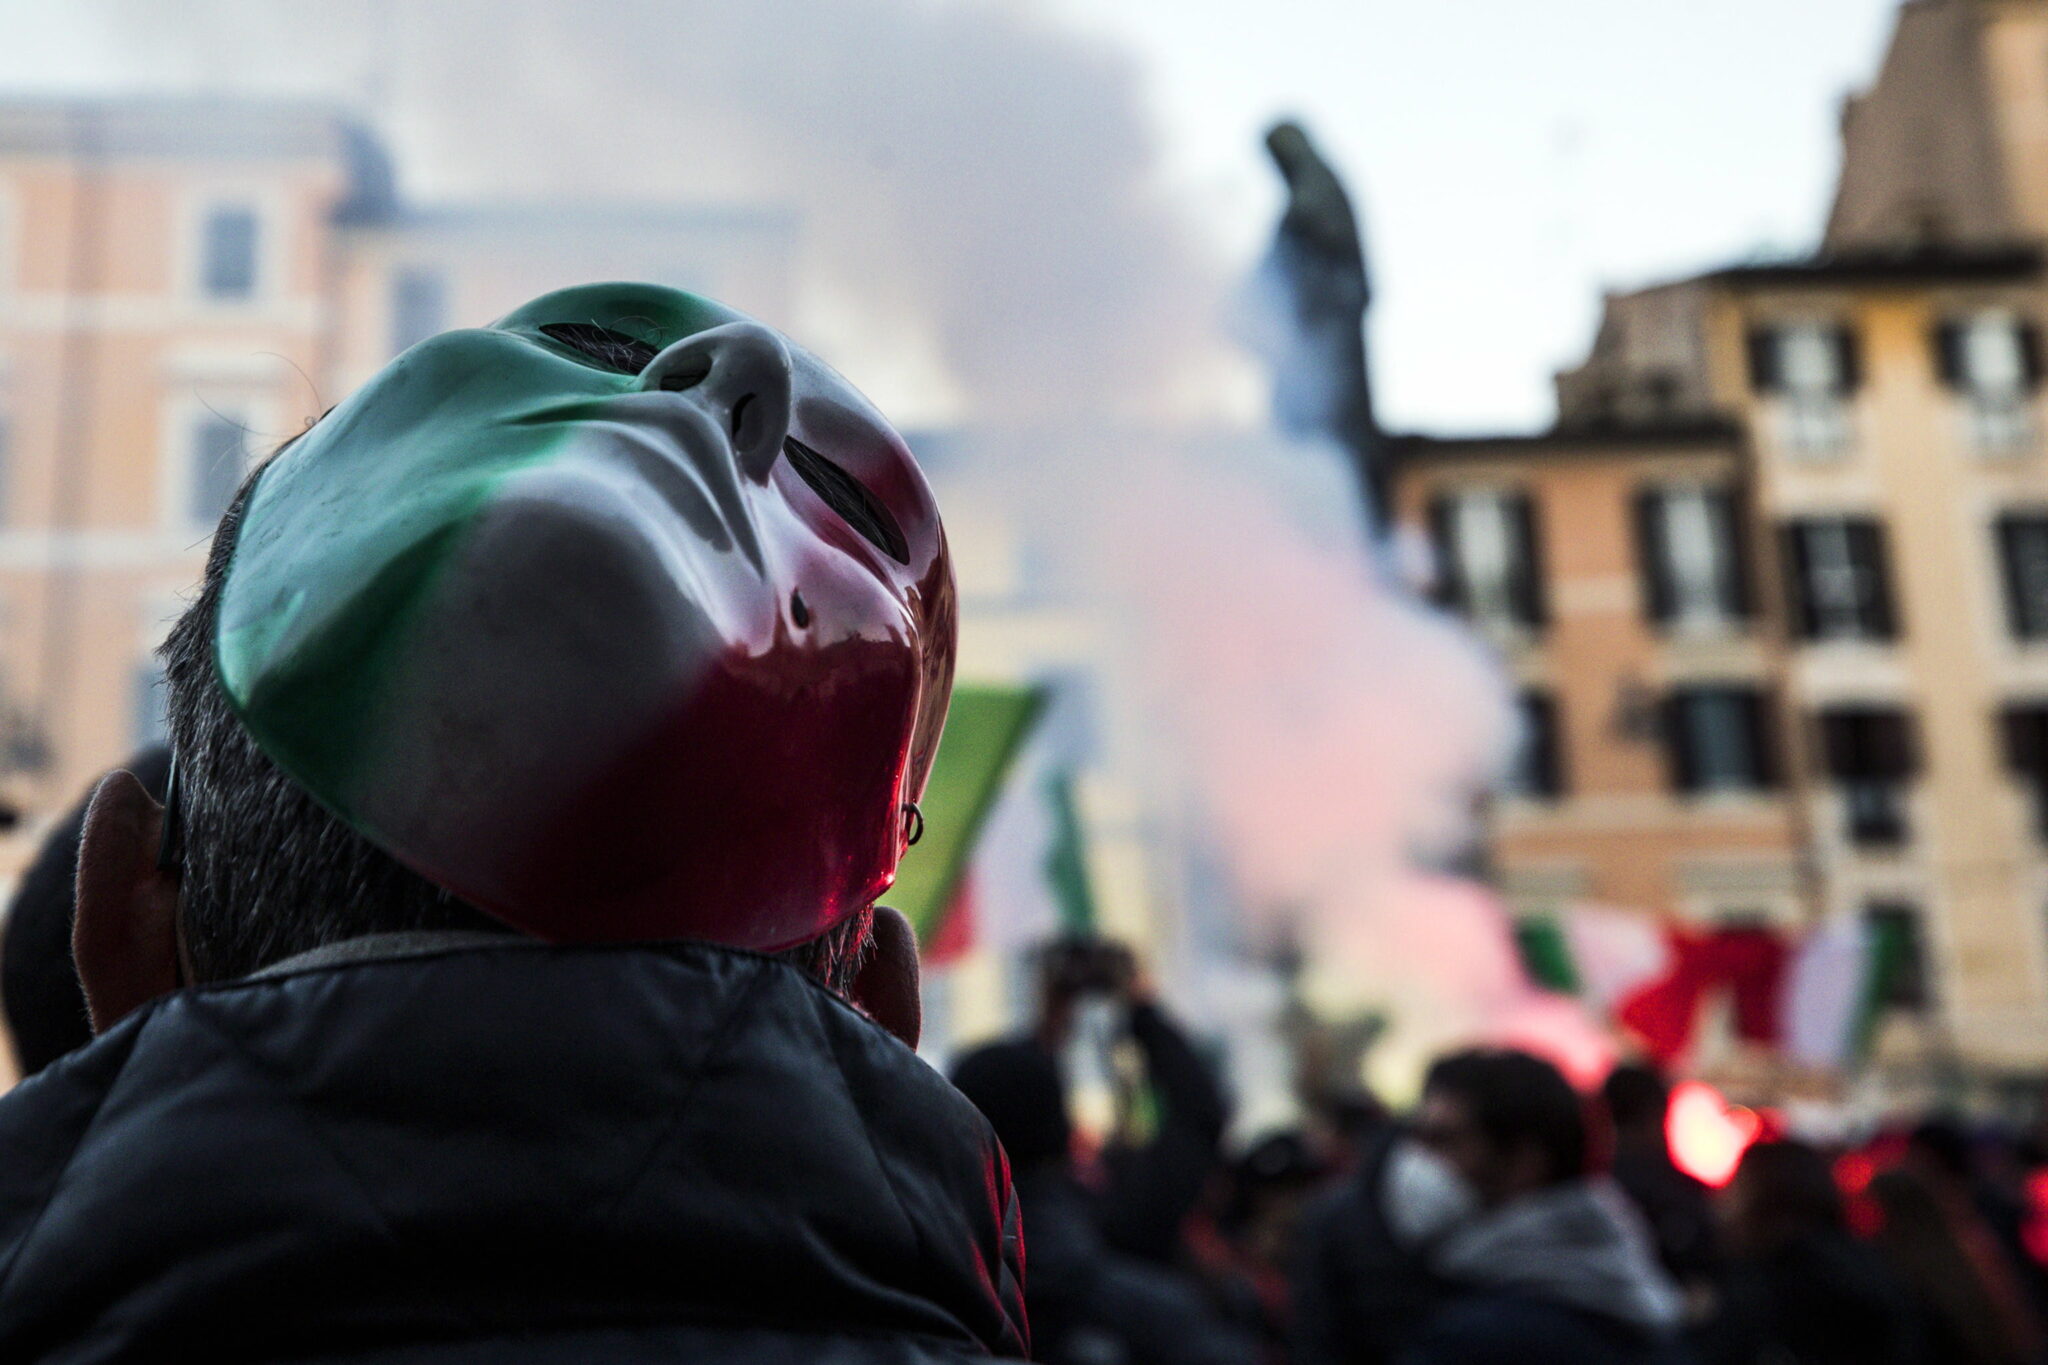 Protest pod hasłem „Nie dla nowej blokady” na Plazu Campo dei Fiori w Rzymie, fot. EPA / ANGELO CARCONI